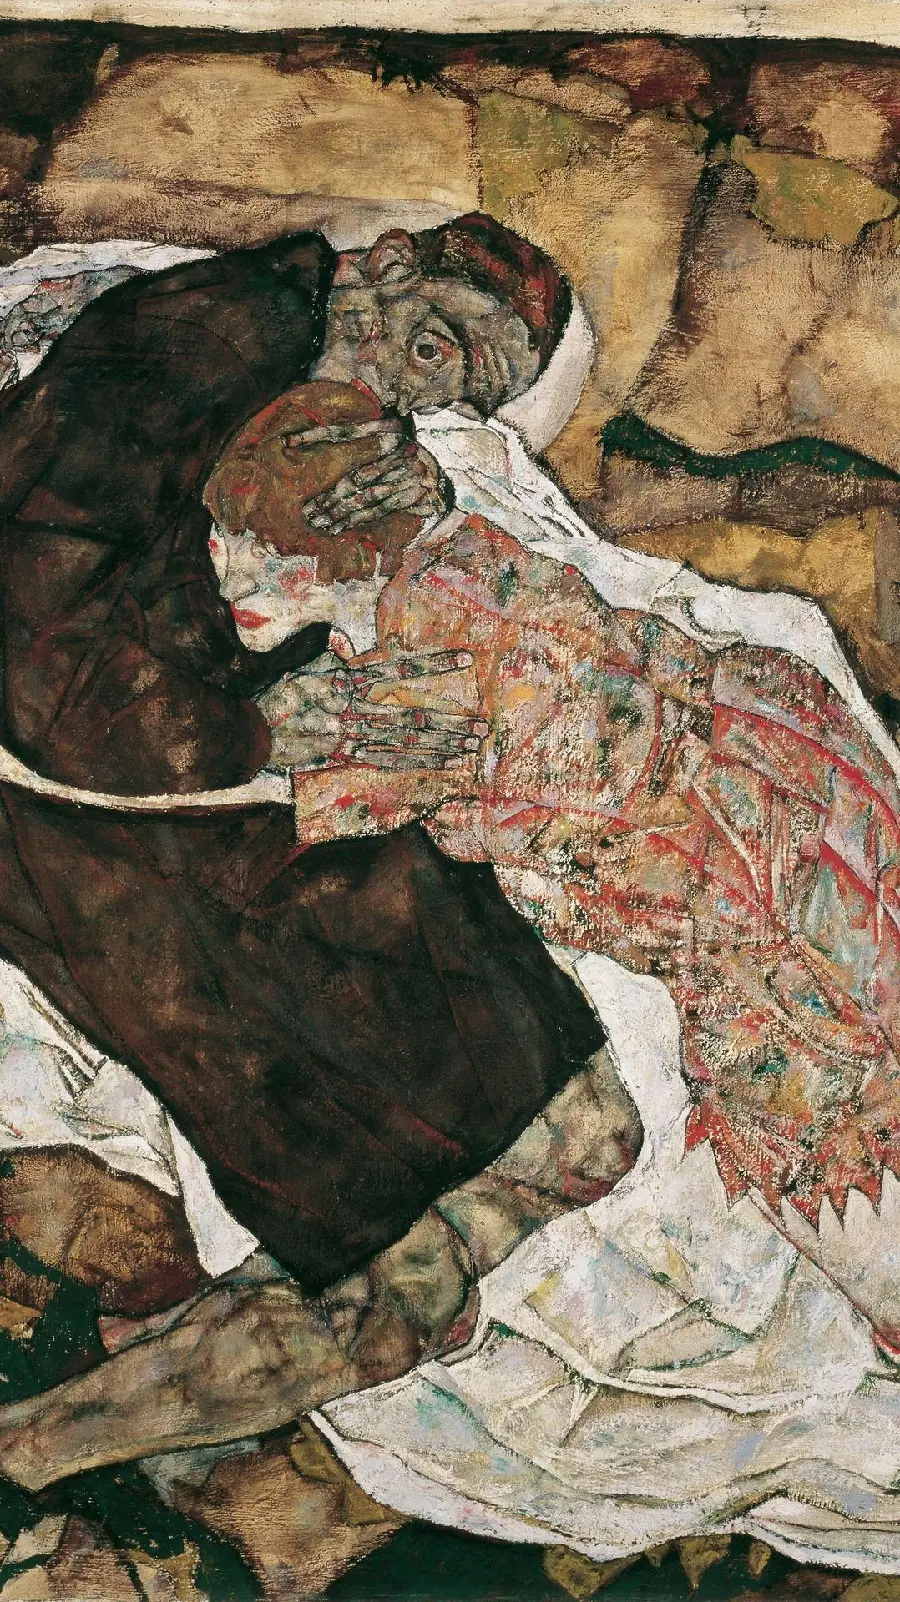 عکس نقاشی غمگین مرگ و دوشیزه از آثار معروف اگون شیله